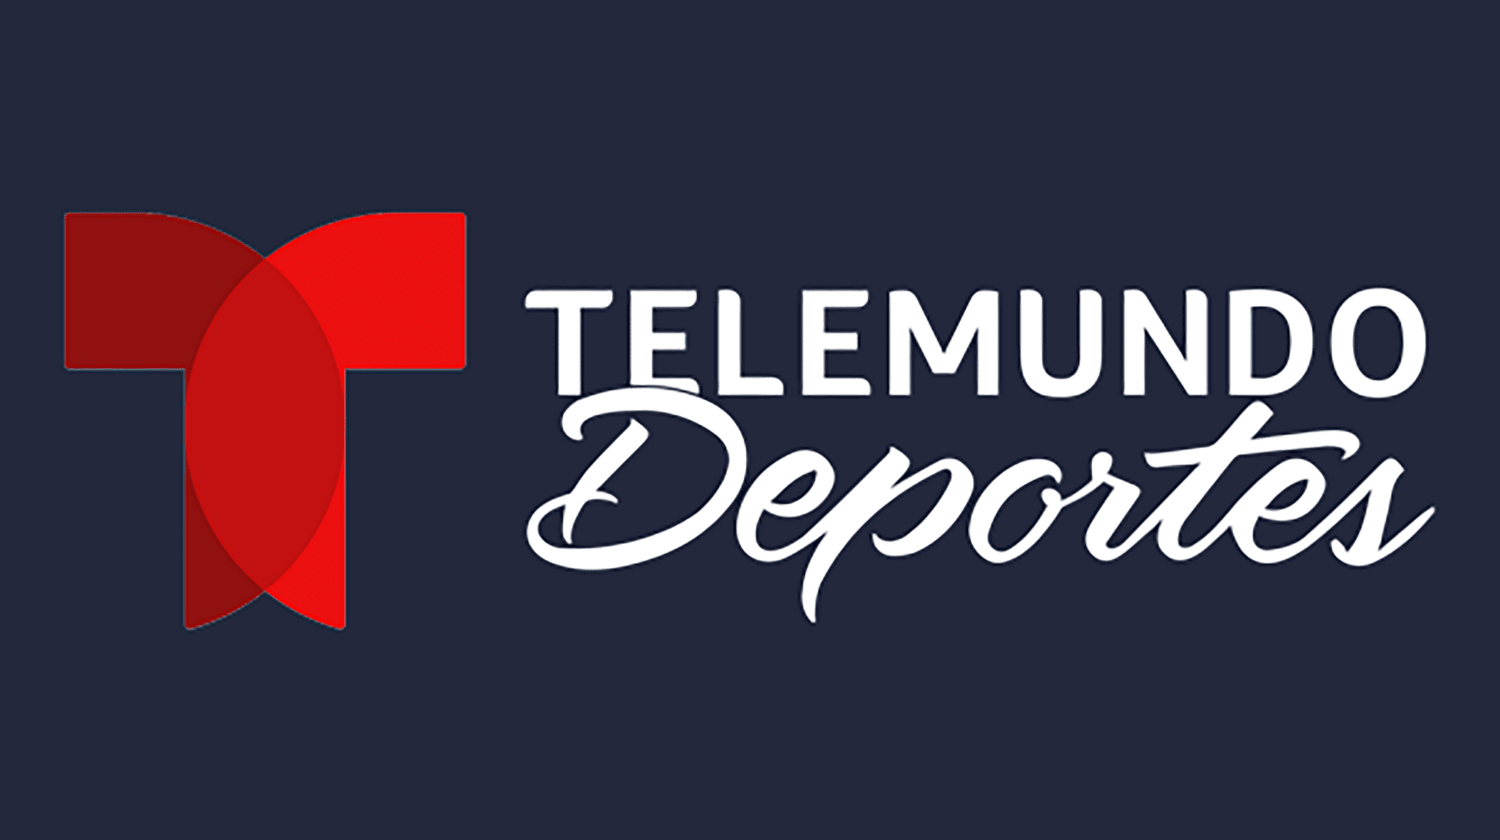 File:Logo Campeonato Uruguayo Primera División Profesional.png